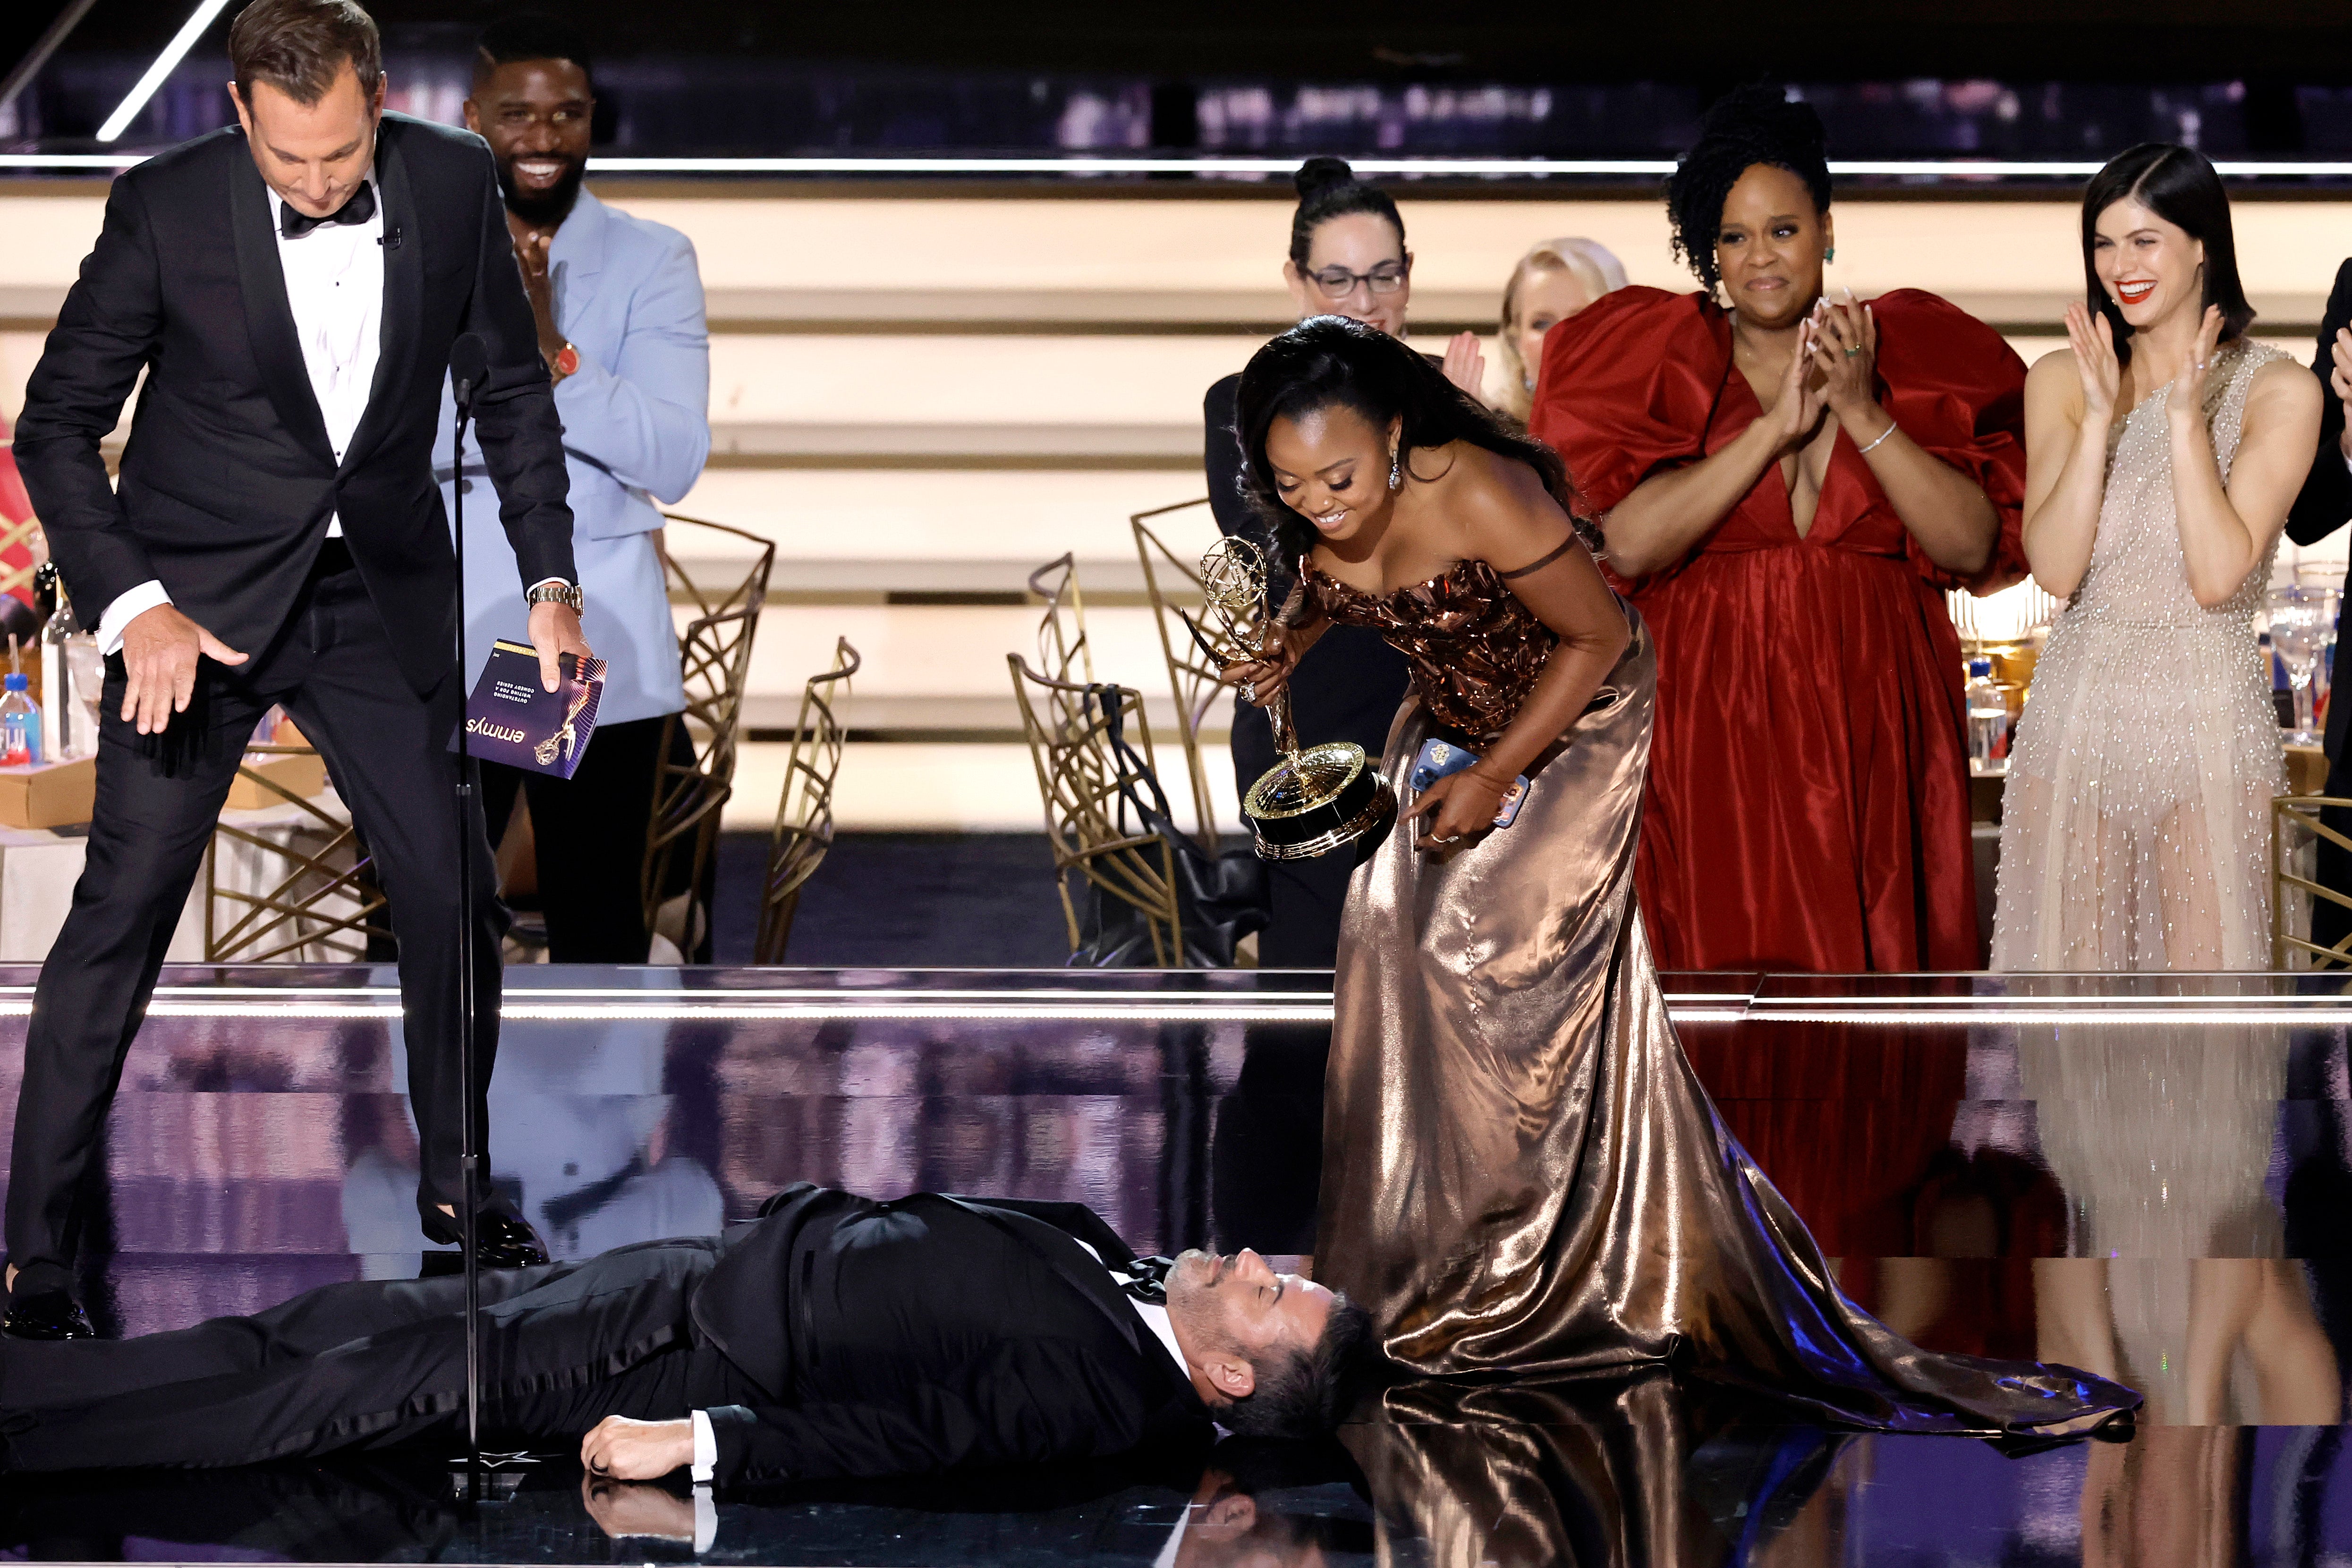 Will Arnett, Jimmy Kimmel, and Quinta Brunson at the Emmys 2022